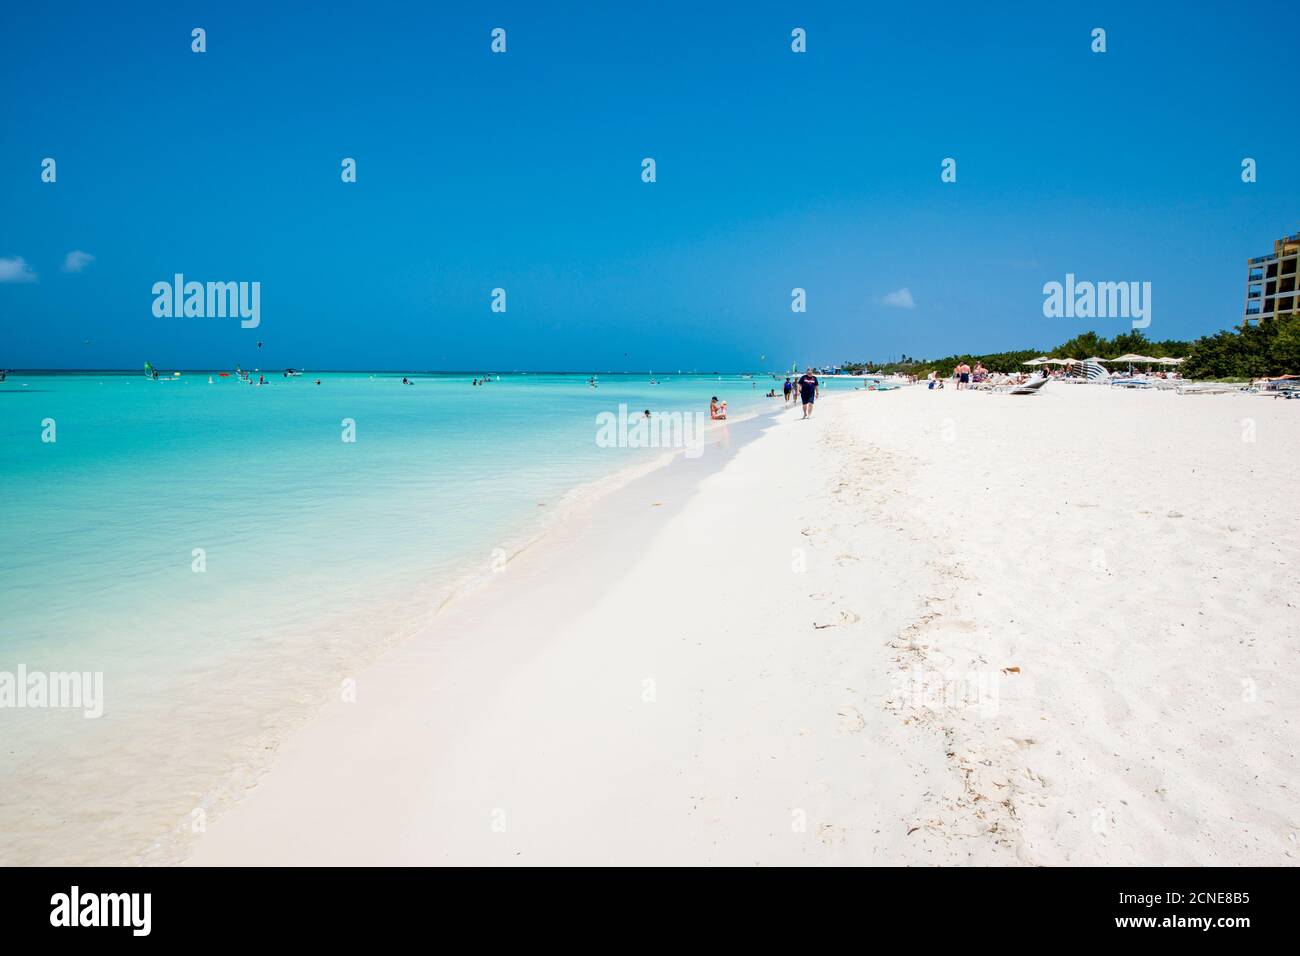 Planche à voile kitesurf sur la plage d'Hadicurari, Aruba, les îles ABC, les Antilles néerlandaises, les Caraïbes, l'Amérique centrale Banque D'Images